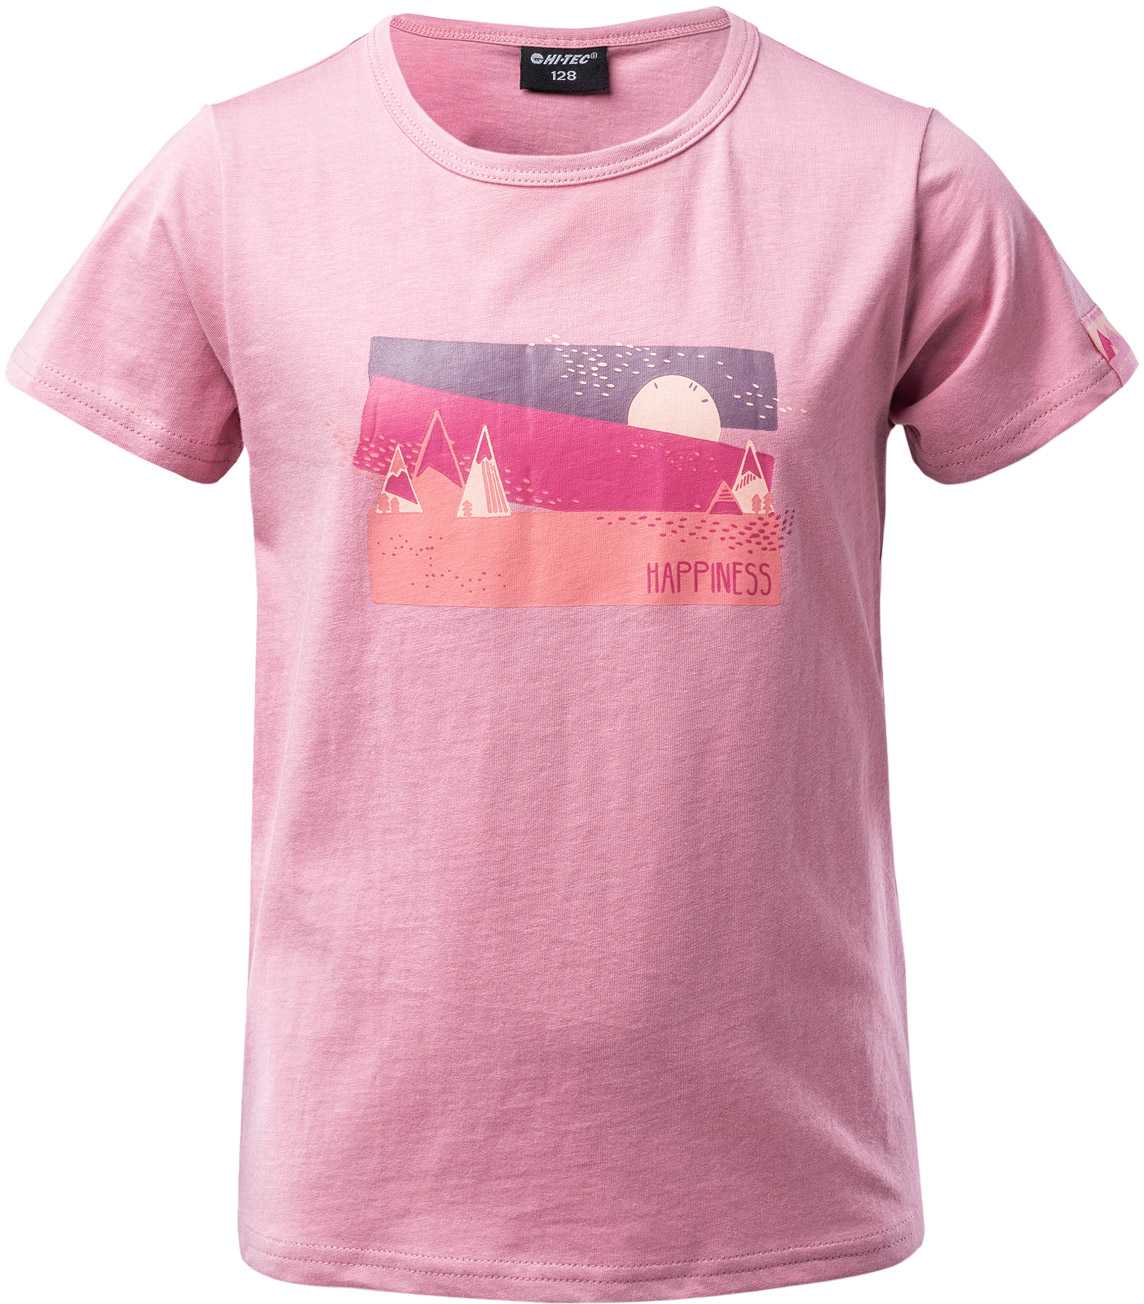 Girls’ T-shirt